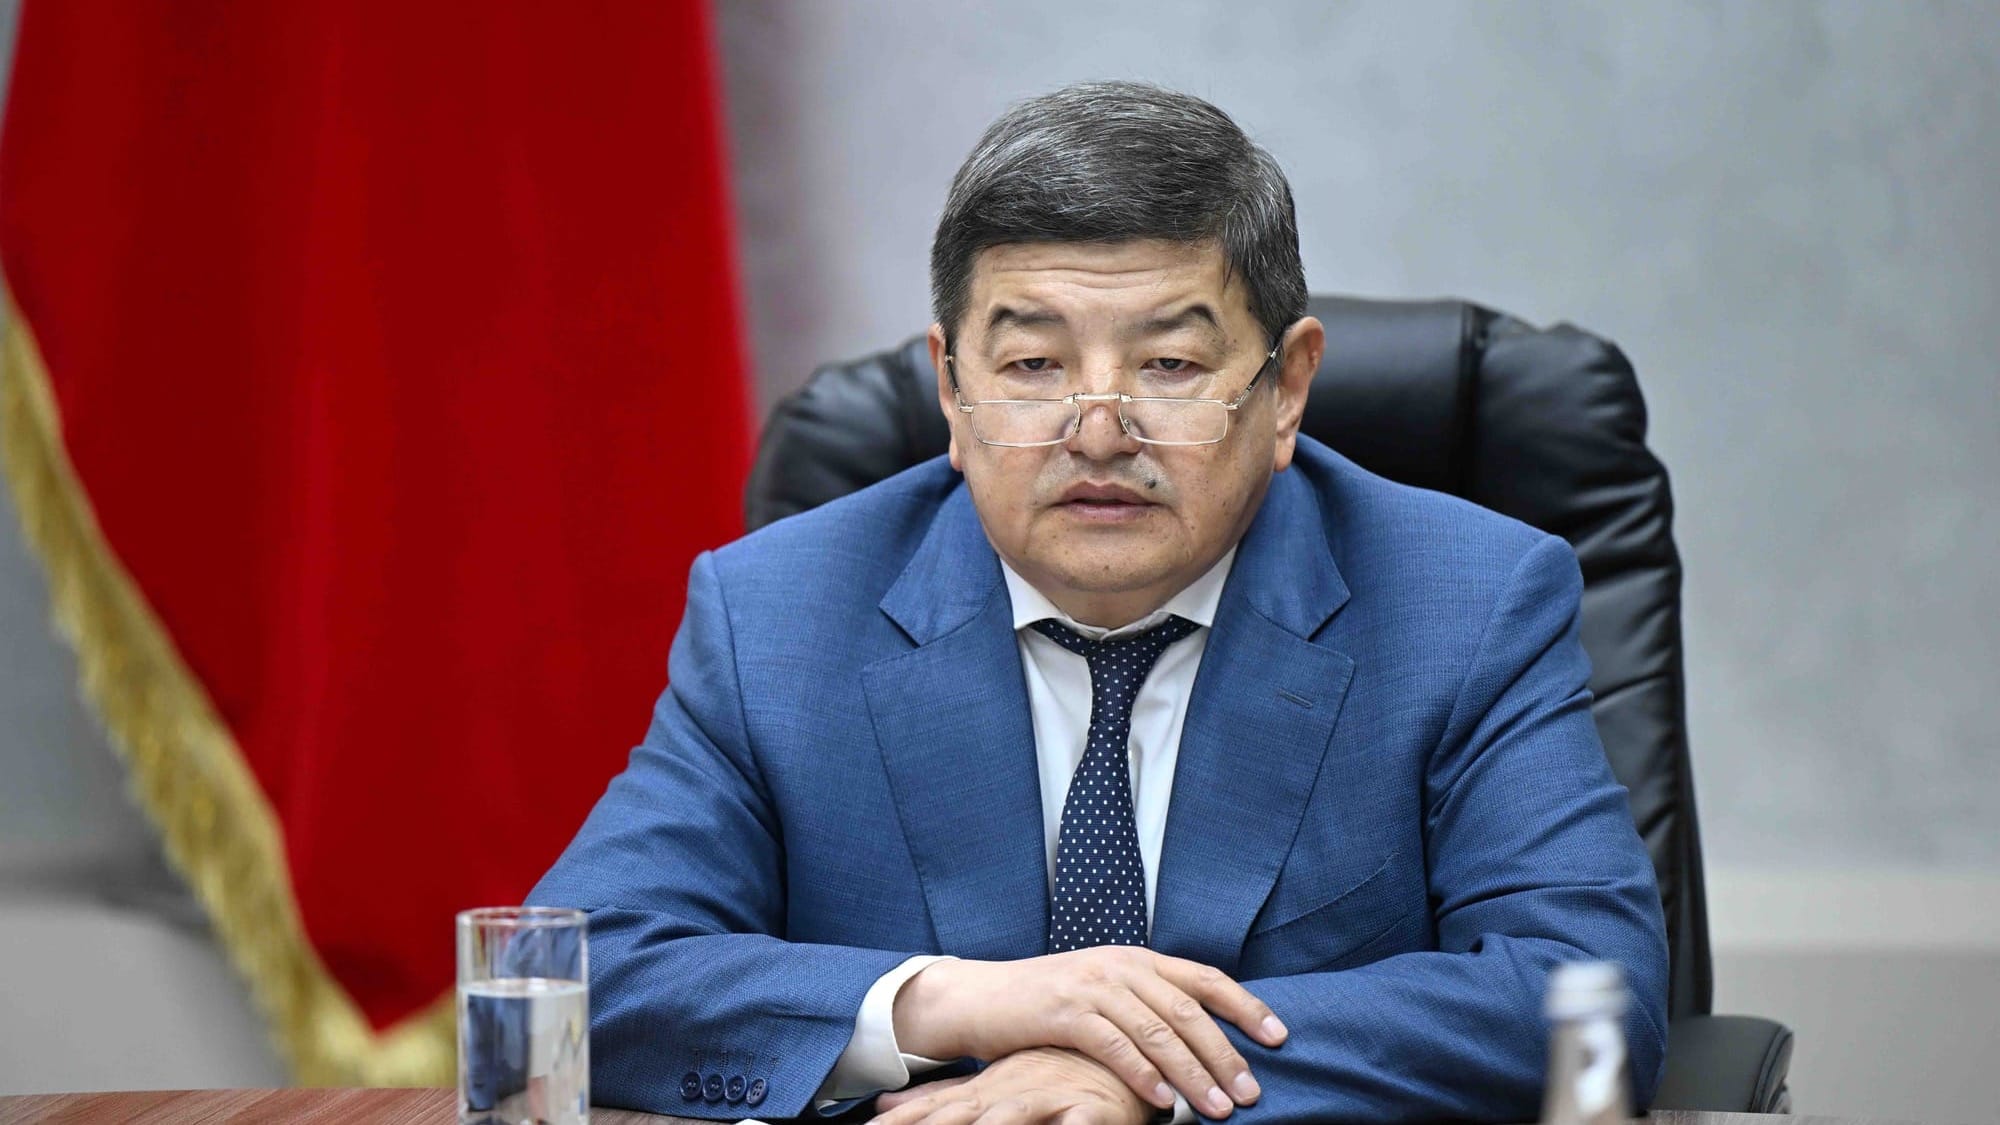 Акылбек Жапаров призвал сотрудников Нацбанка КР «выйти из зоны комфорта»